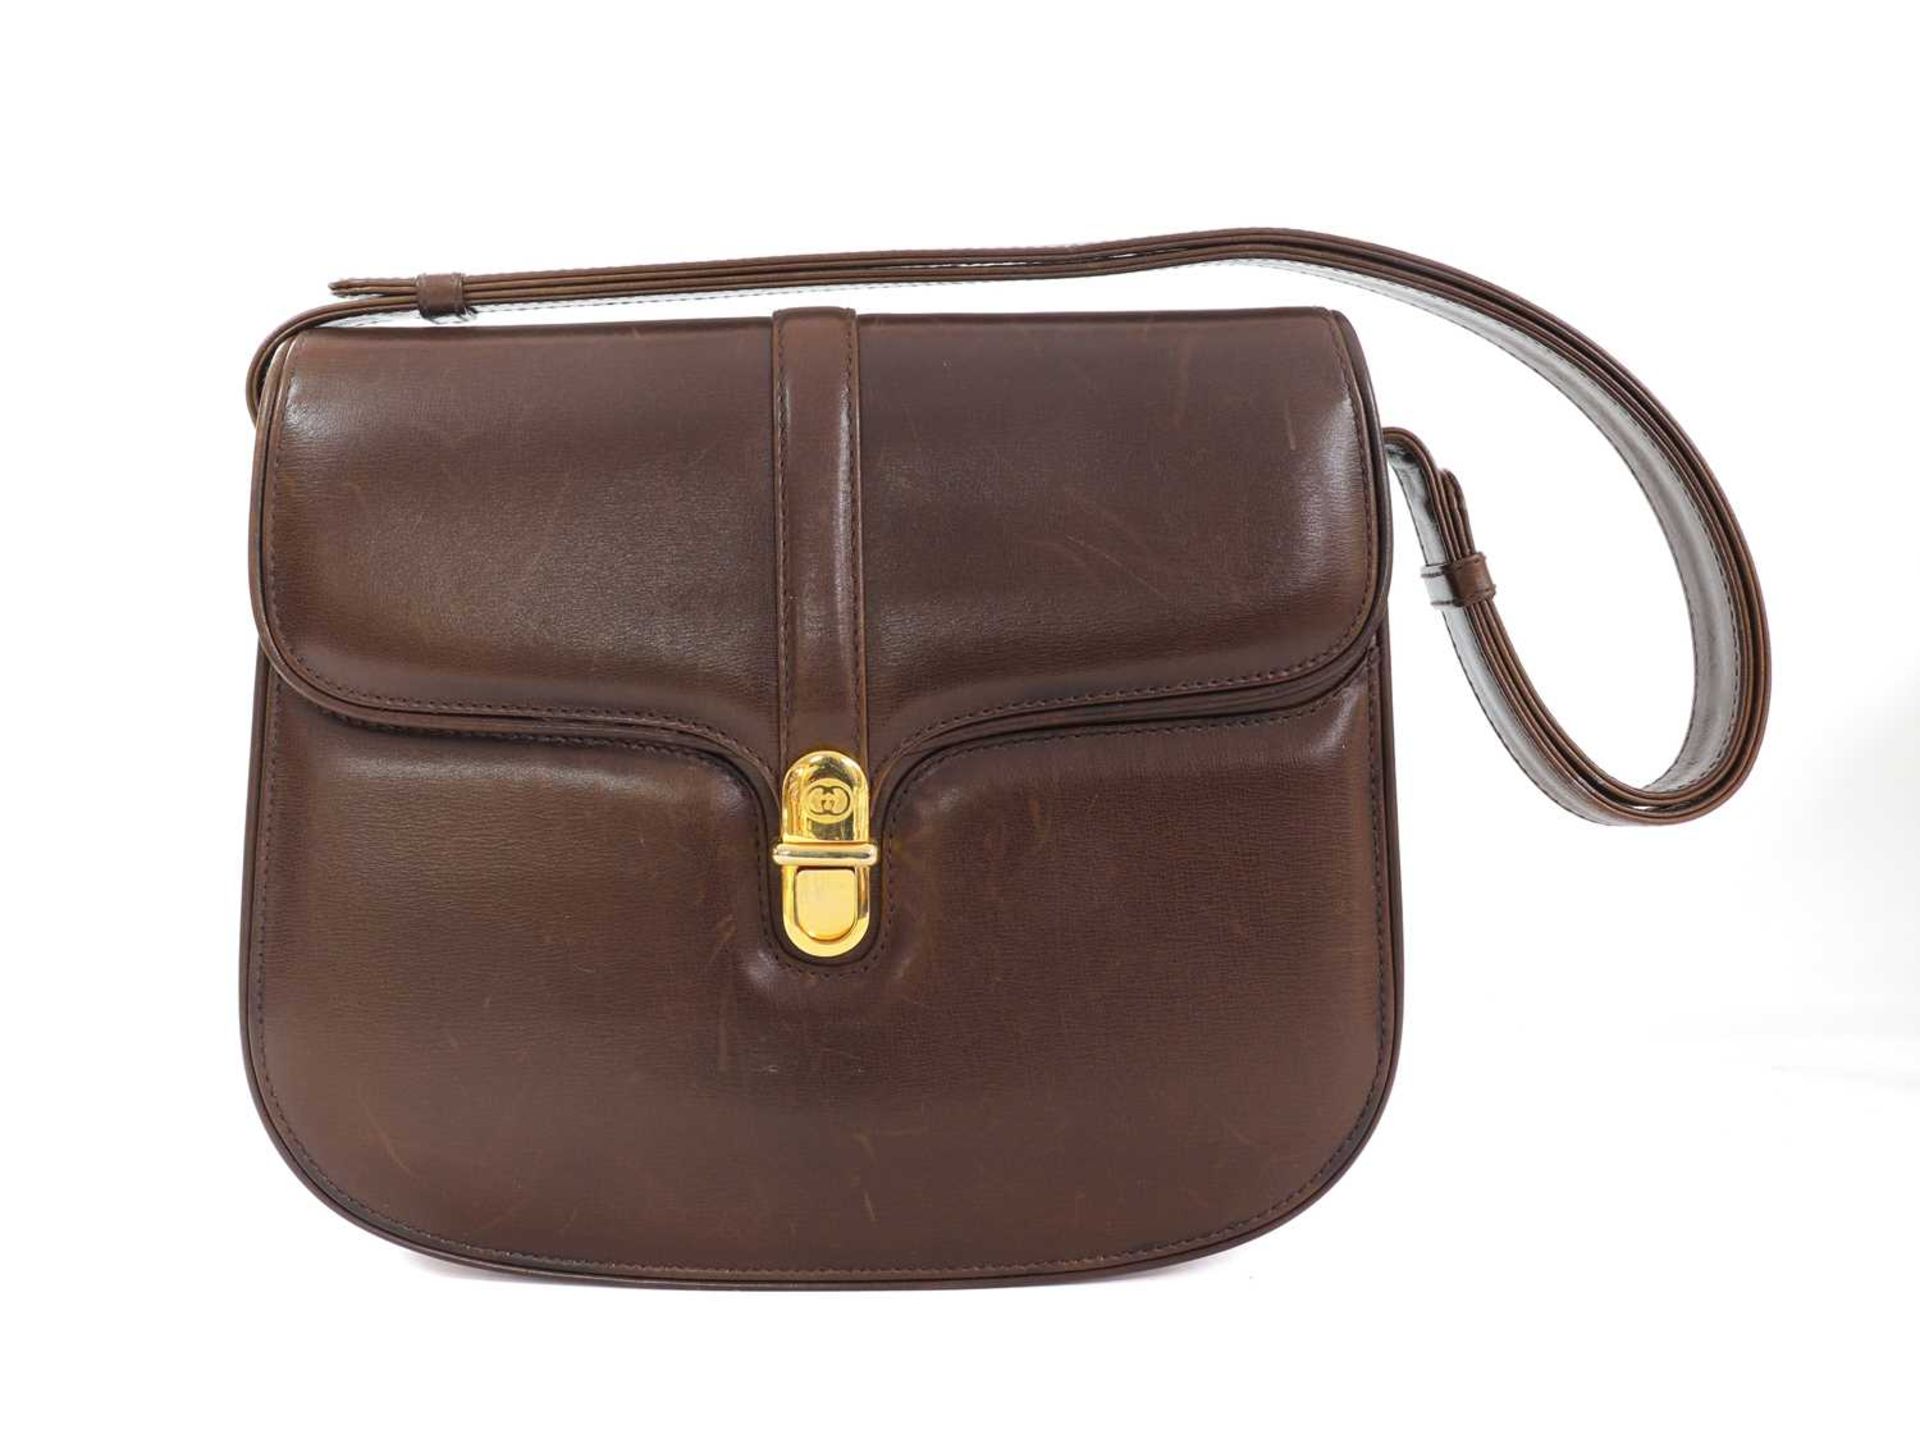 A vintage Gucci brown leather shoulder bag,